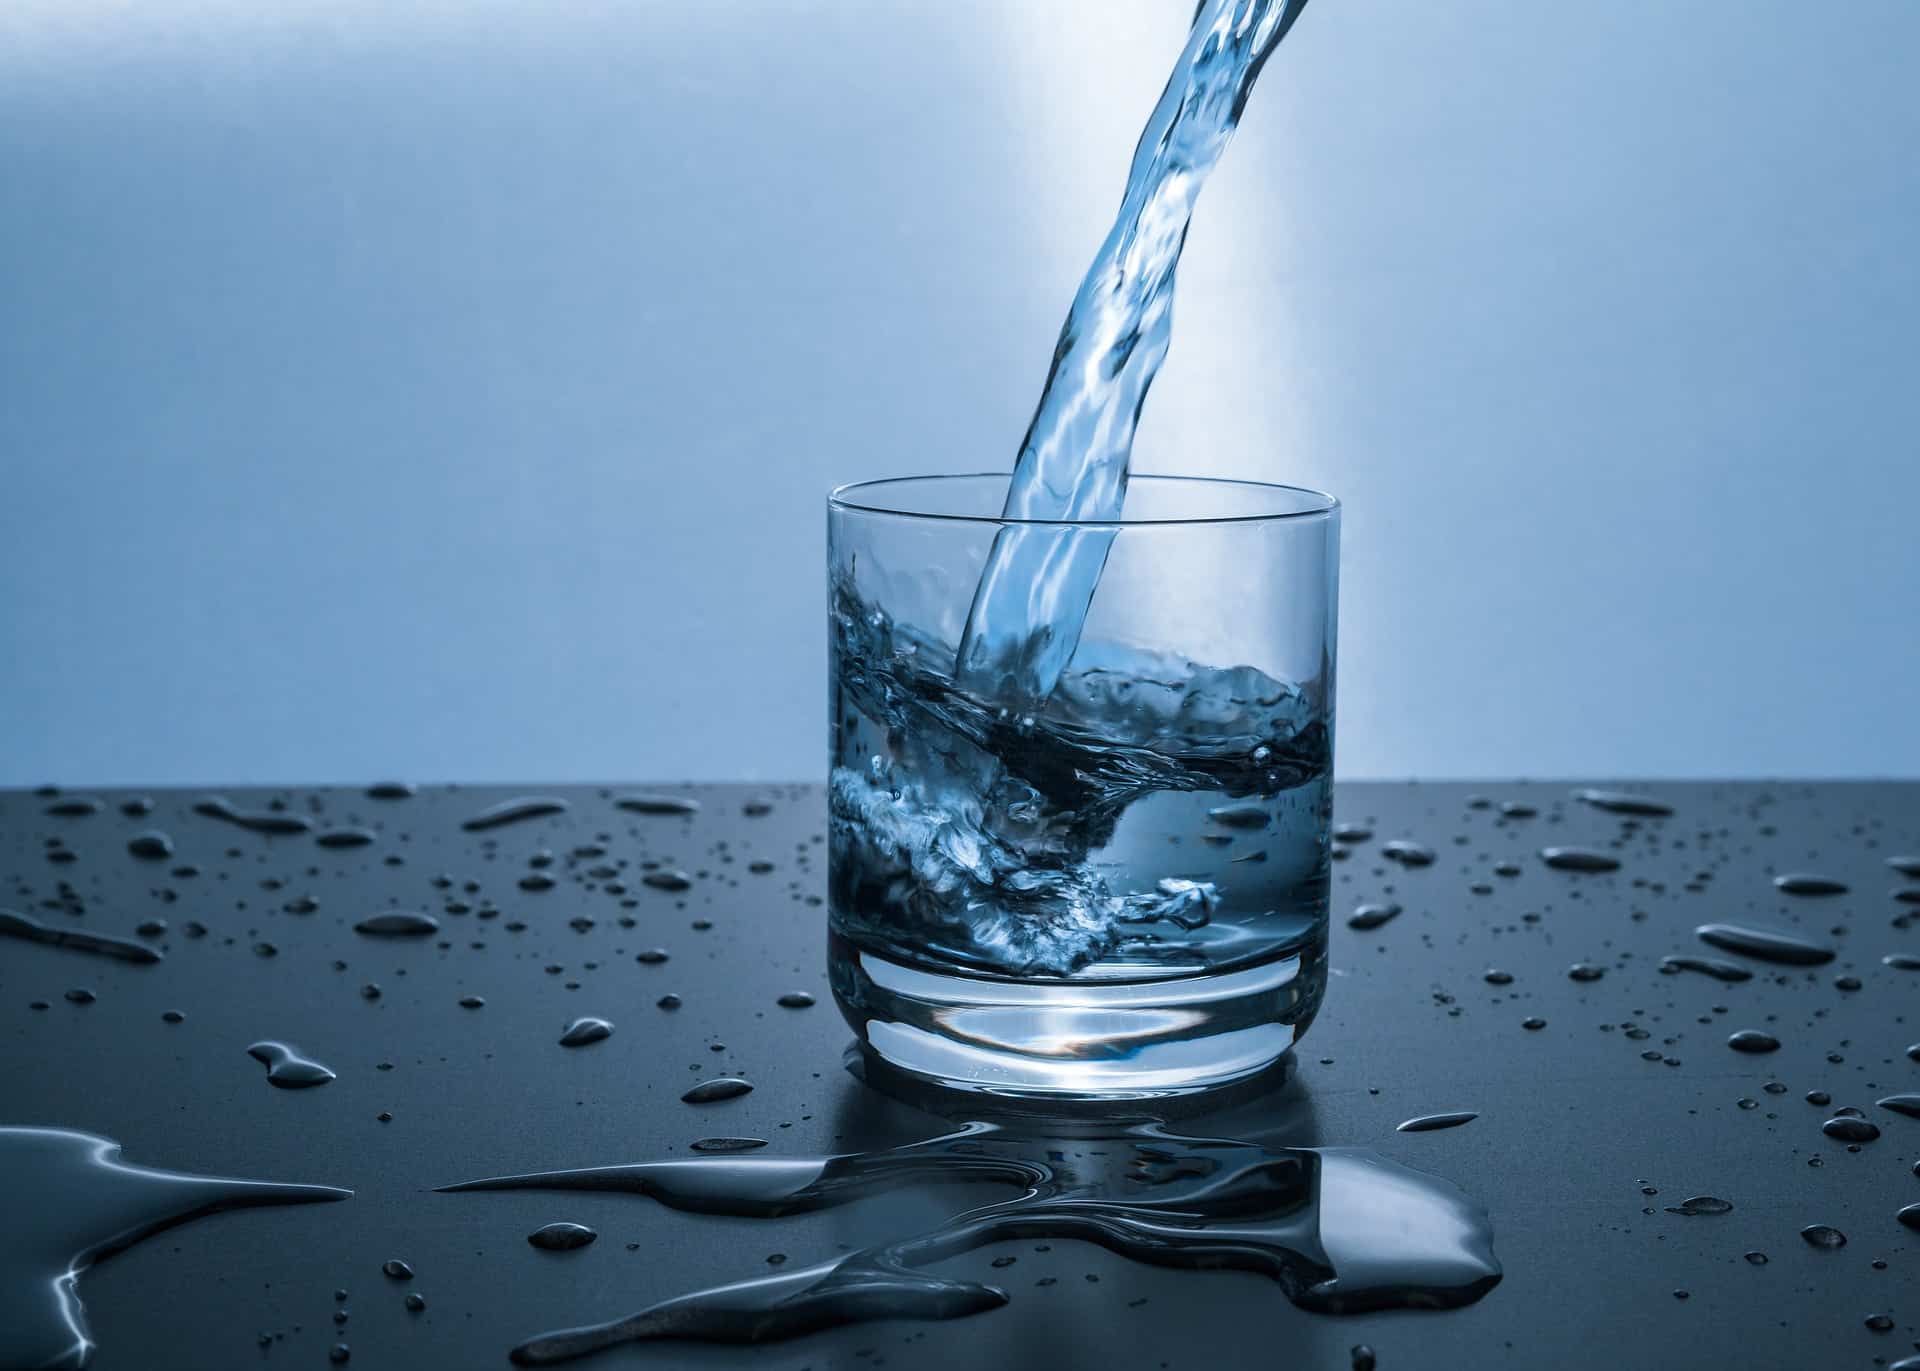 dietu k pití vody bez jídla